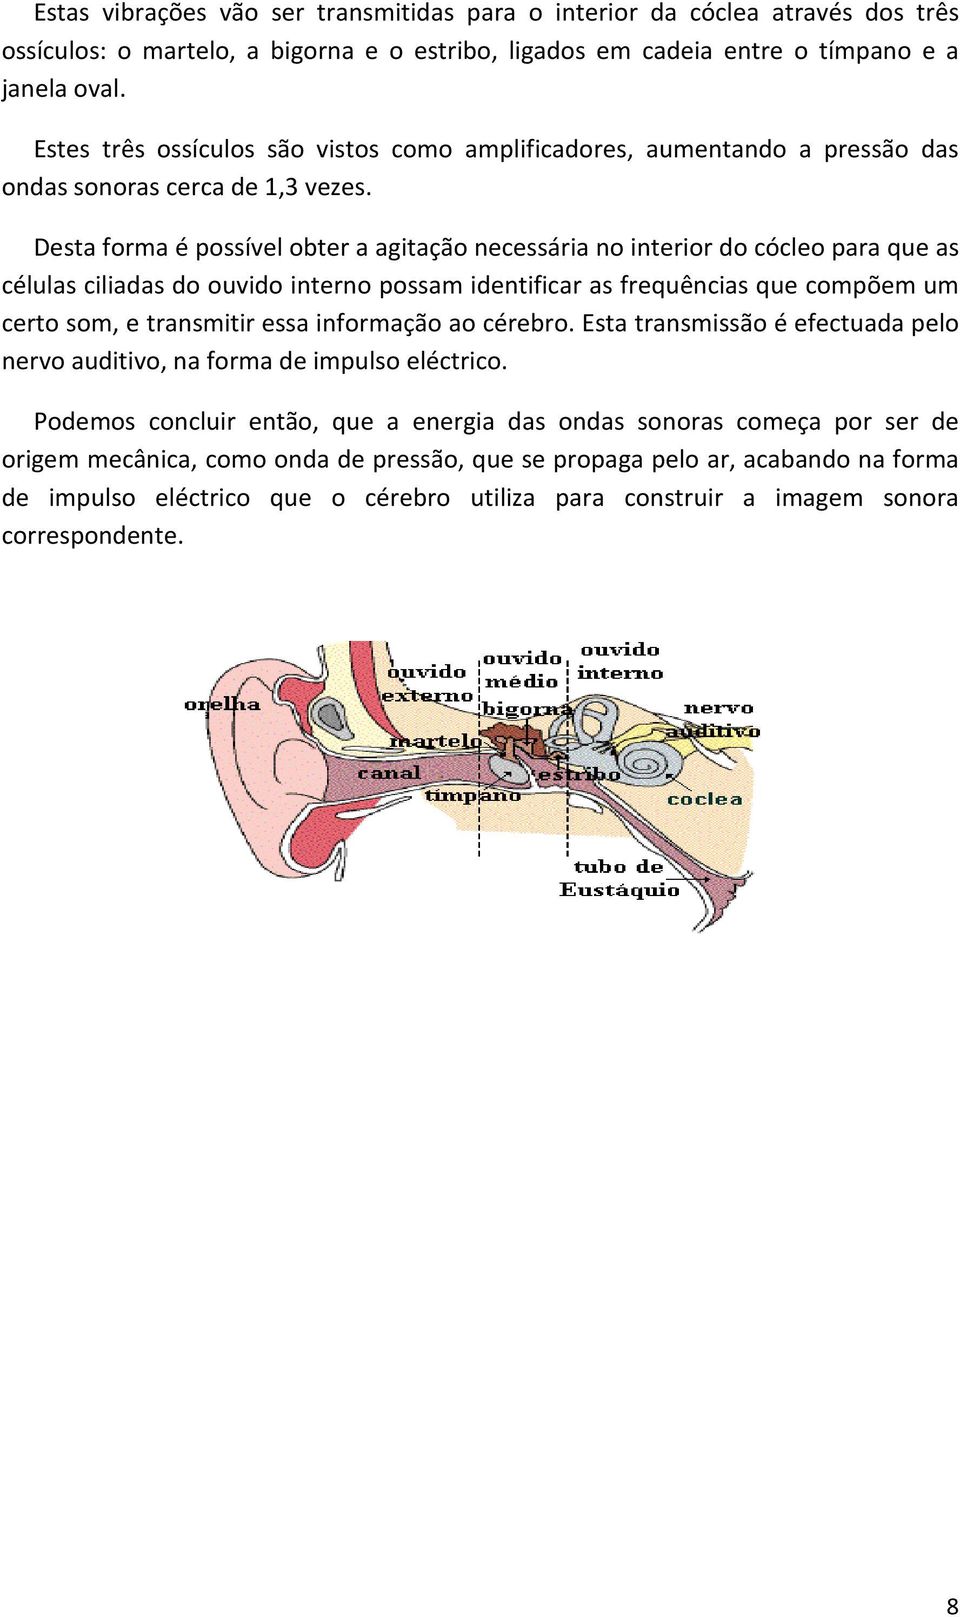 Desta forma é possível obter a agitação necessária no interior do cócleo para que as células ciliadas do ouvido interno possam identificar as frequências que compõem um certo som, e transmitir essa